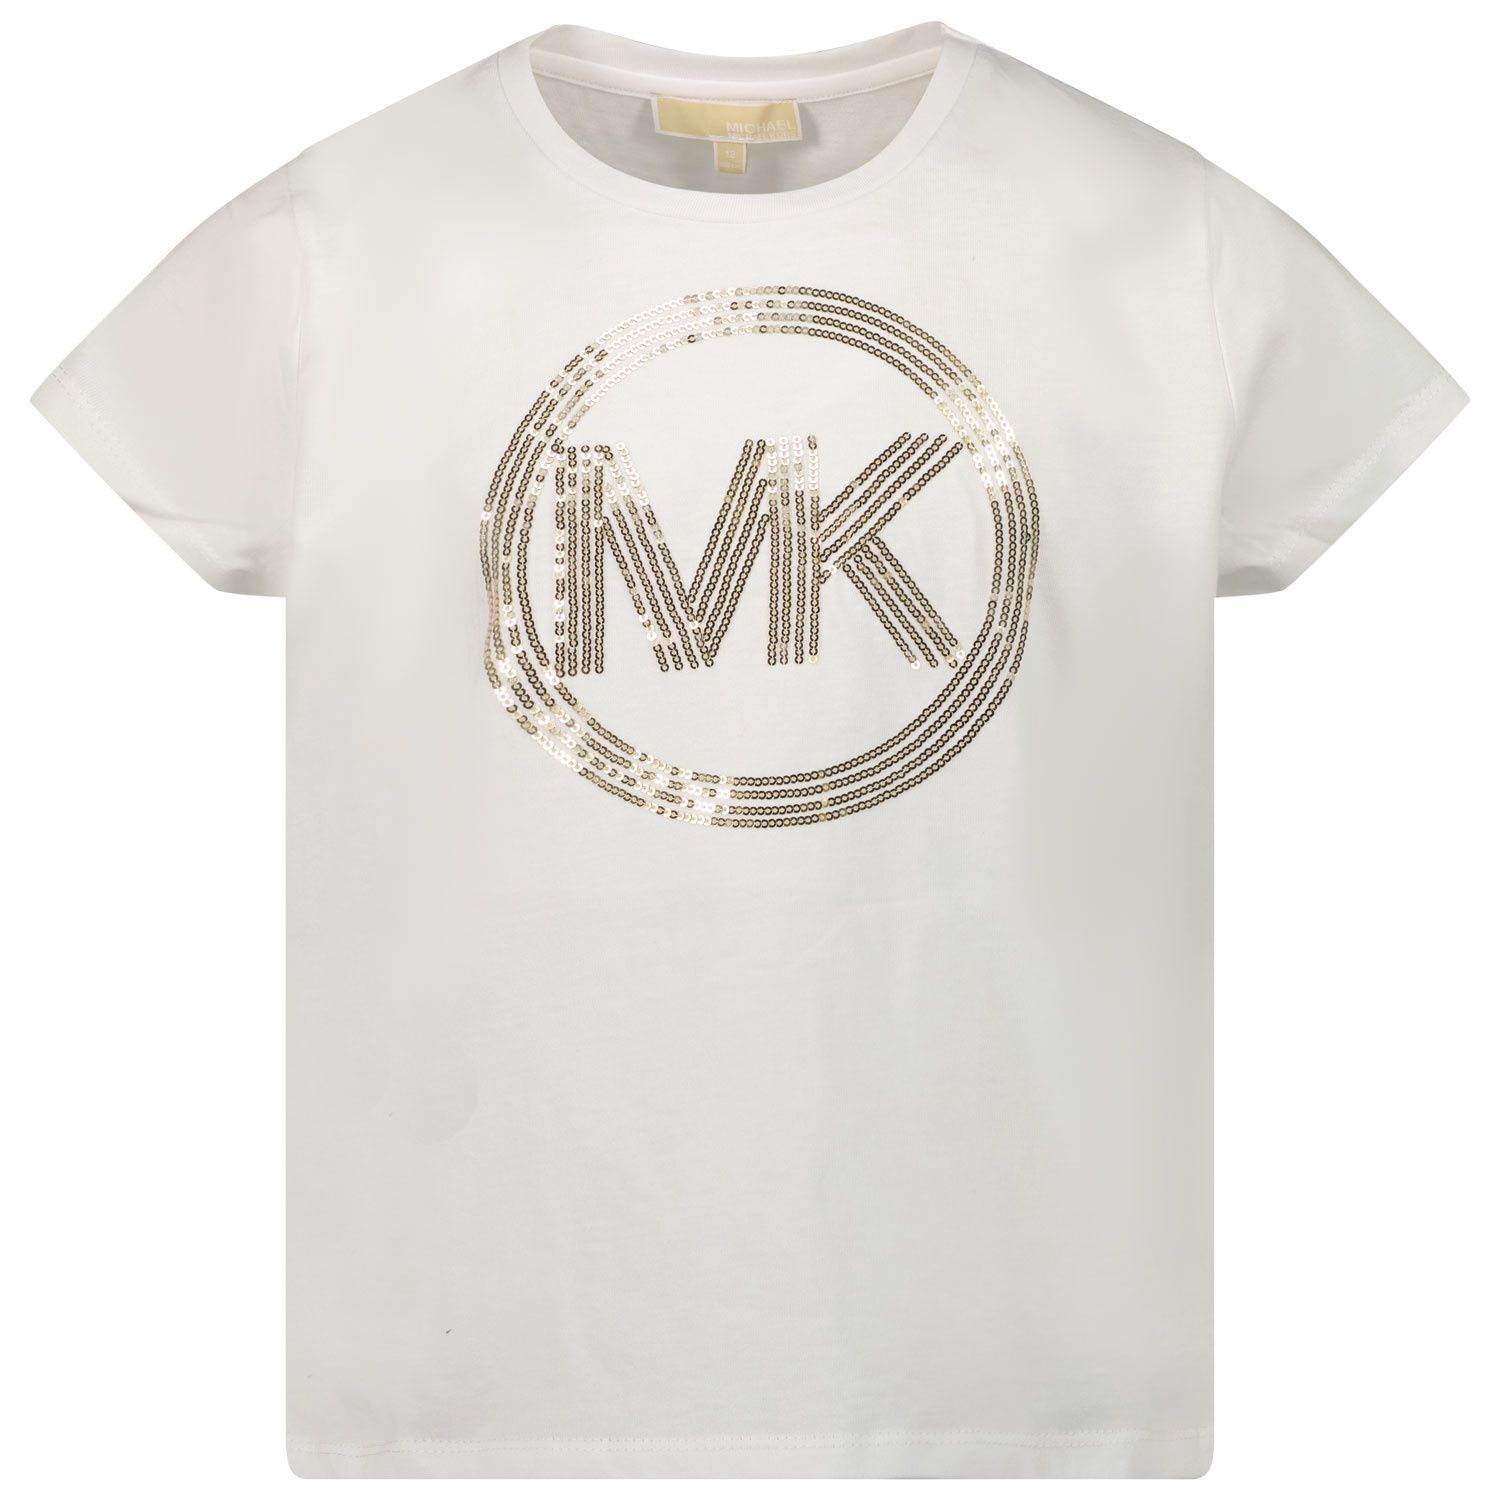 Afbeelding van Michael Kors R15113 kinder t-shirt wit